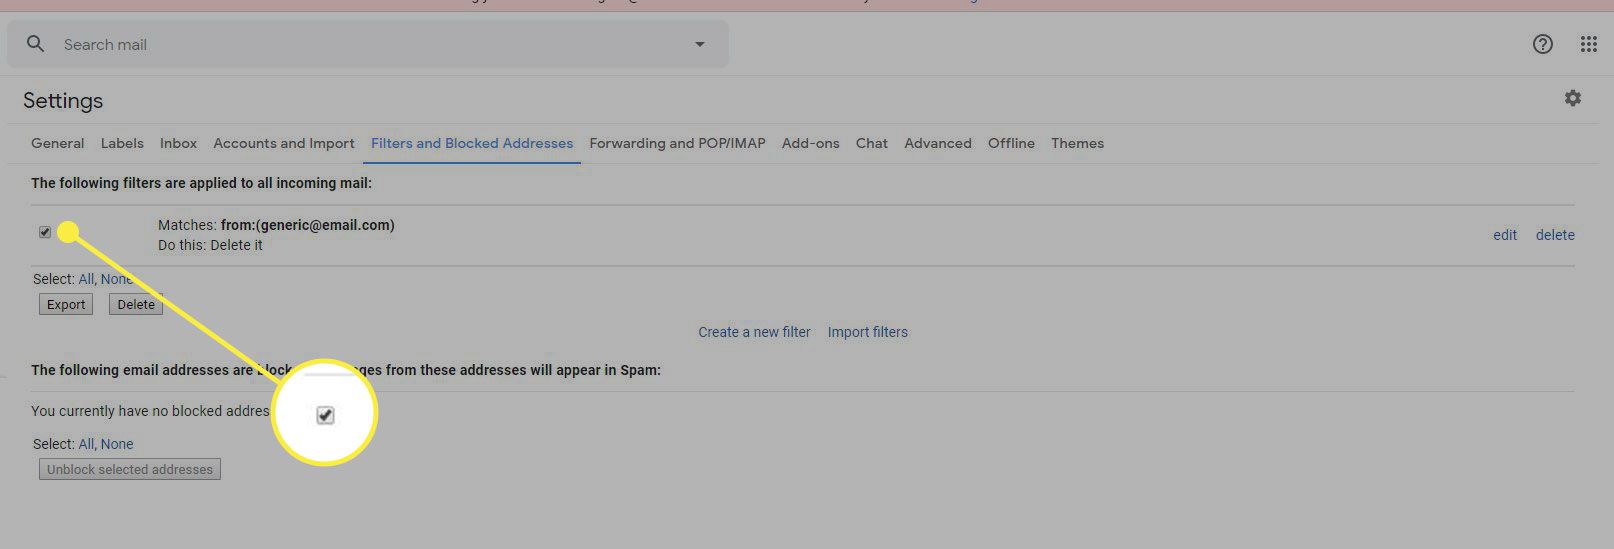 Een screenshot van de filterinstellingen van Gmail met het selectievakje naast een filter gemarkeerd